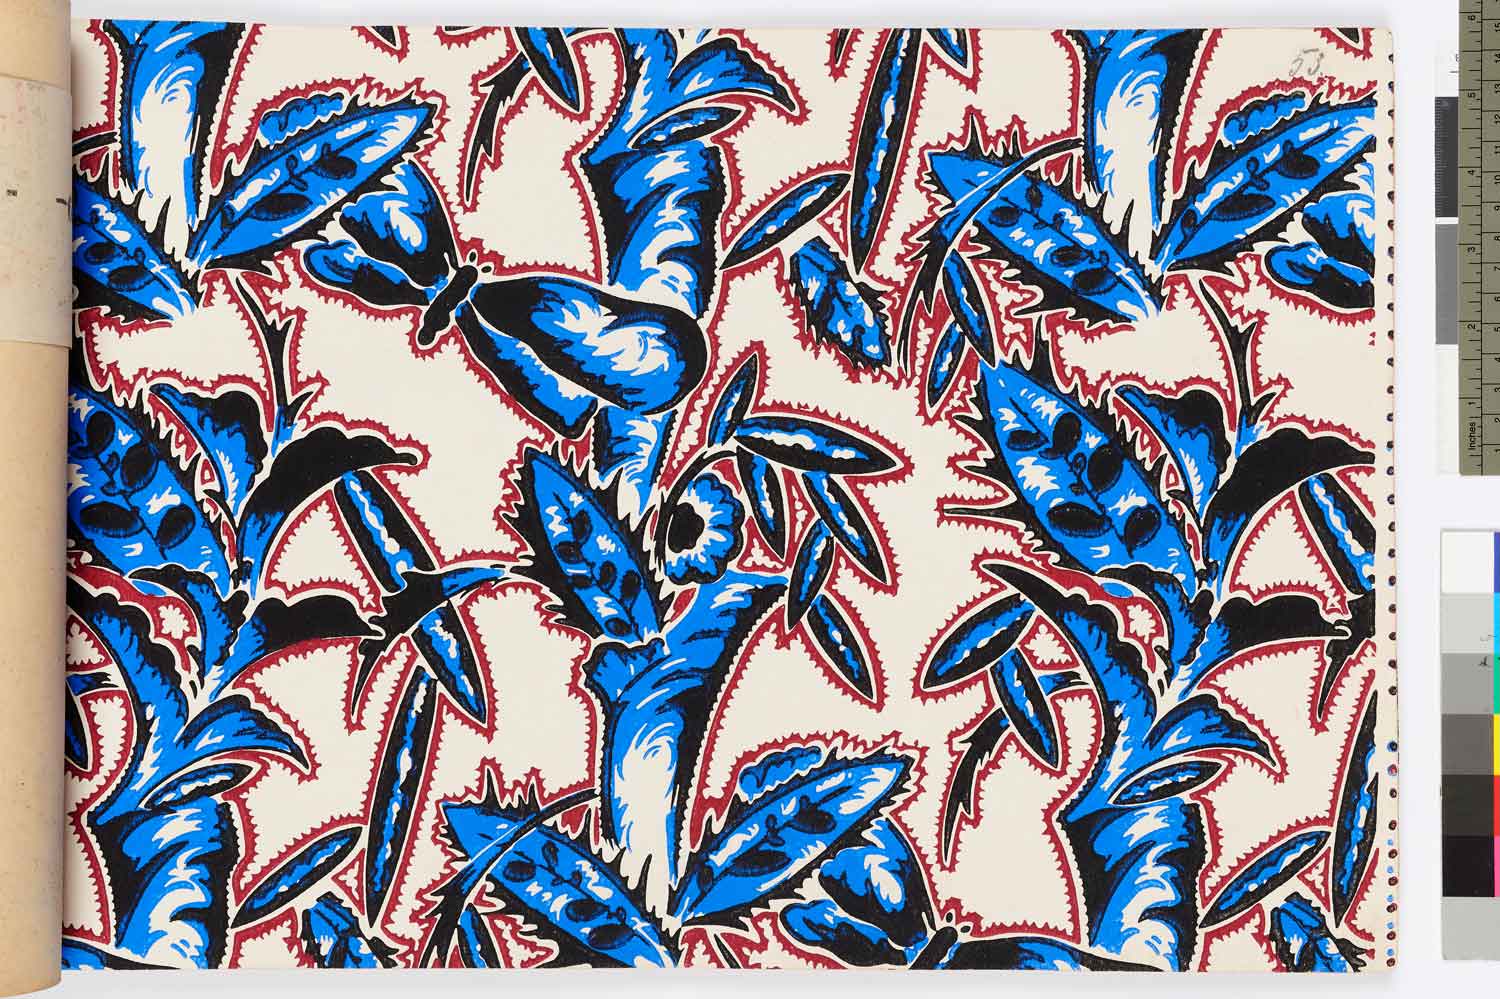 Foto, farbig: Kelchförmige, blaue Blüten mit roten Konturen und schwarzen Schatten auf weißem Grund.